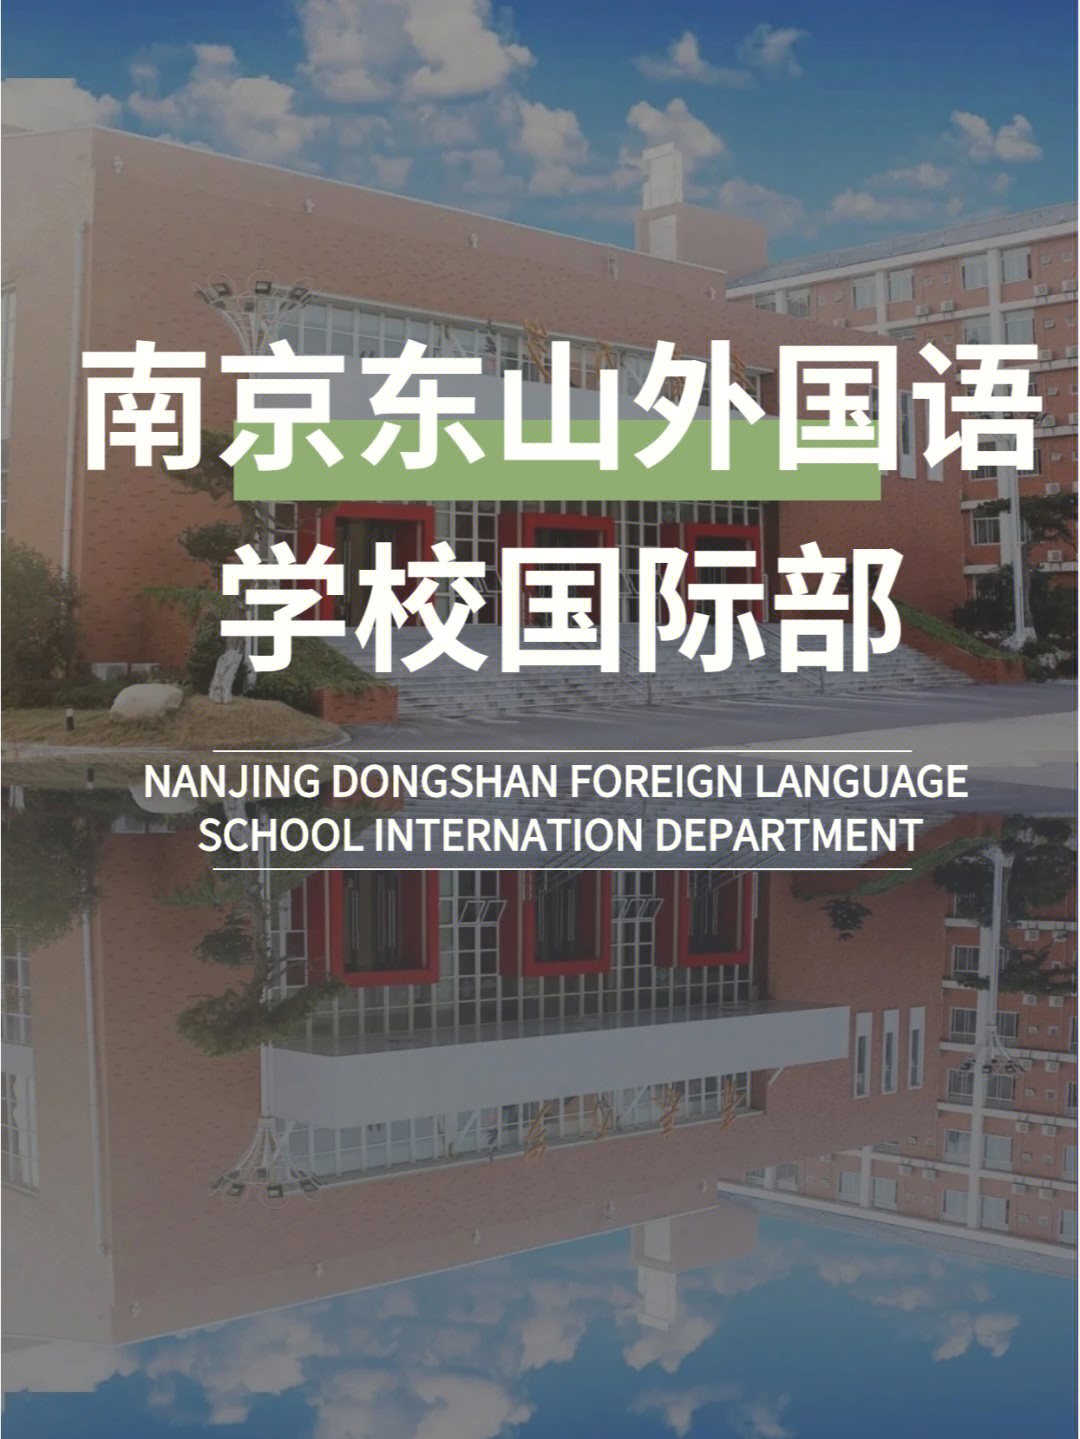 南京国际高中南京东山外国语学校国际部